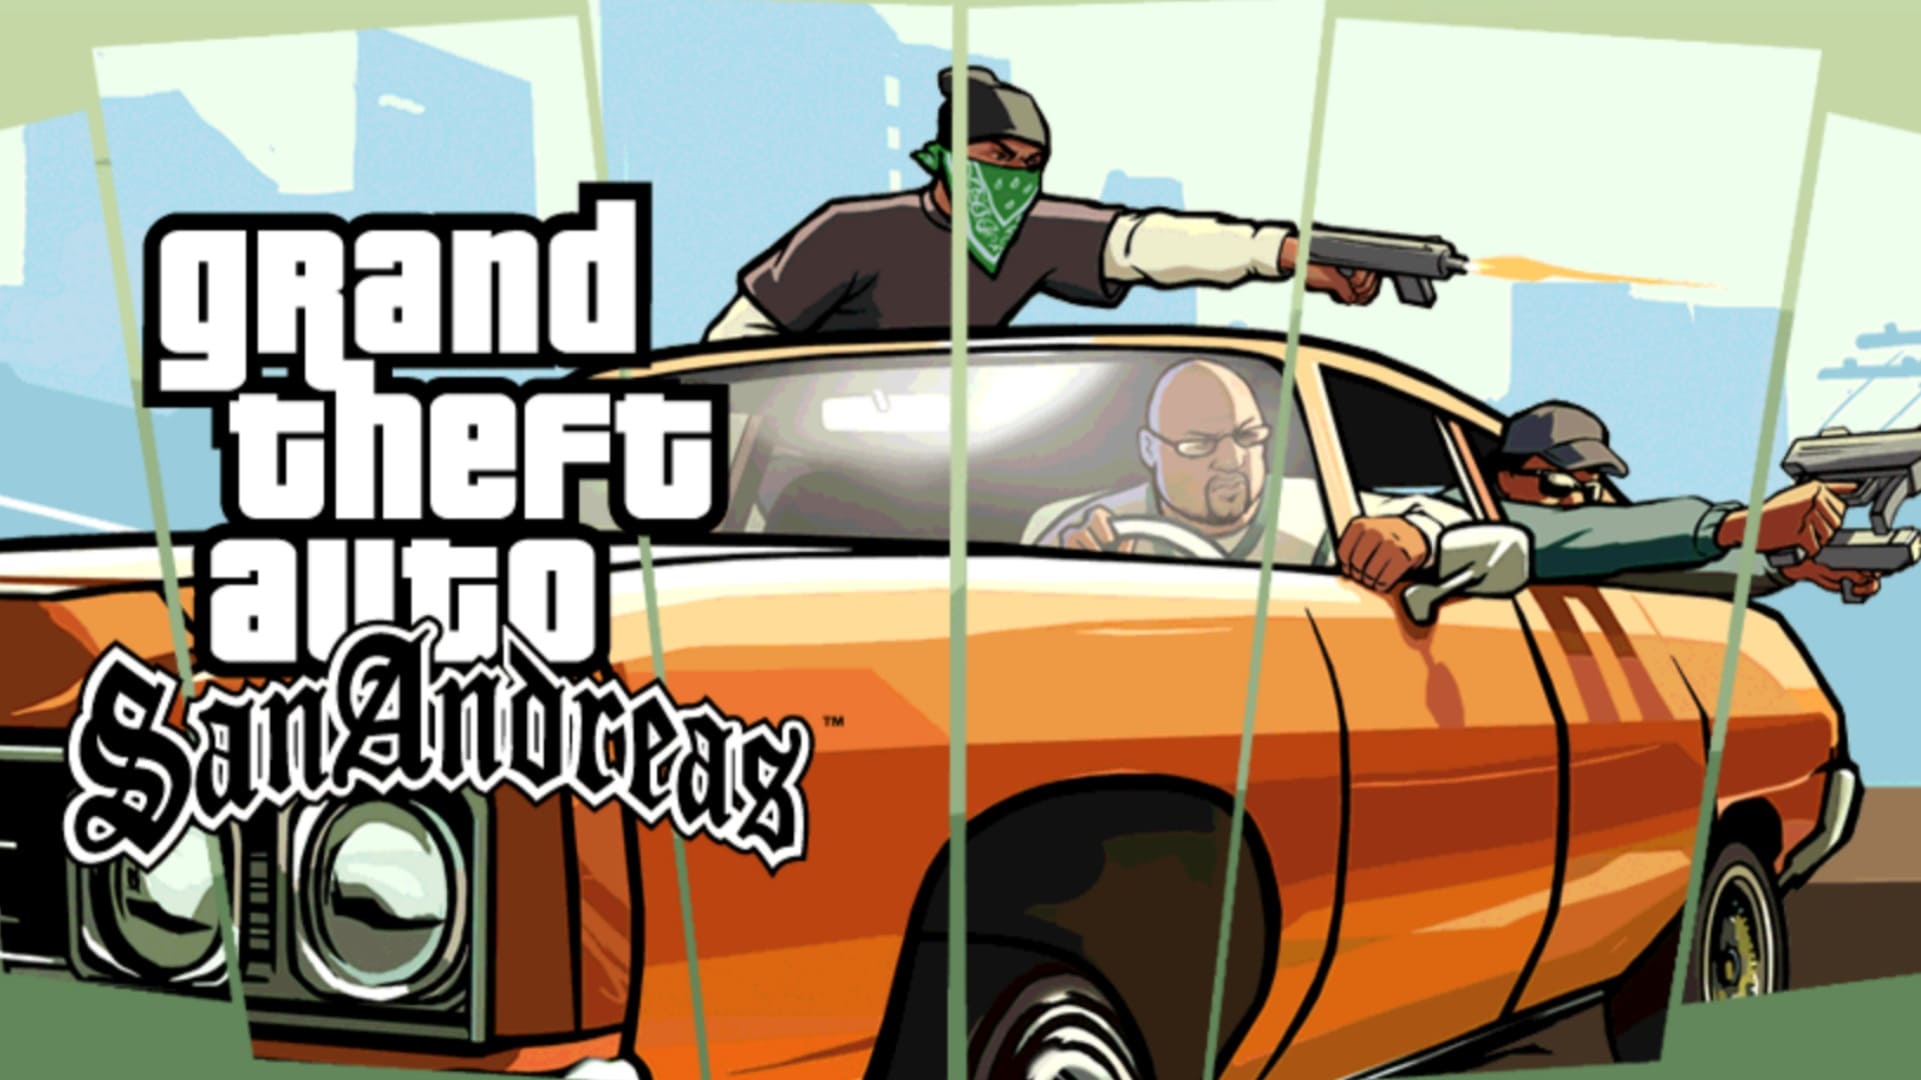 تحديث جراند ثفت أوتو 5 سان أندرياس الأصلية للاندرويد لعبة جاتا Grand Theft Auto